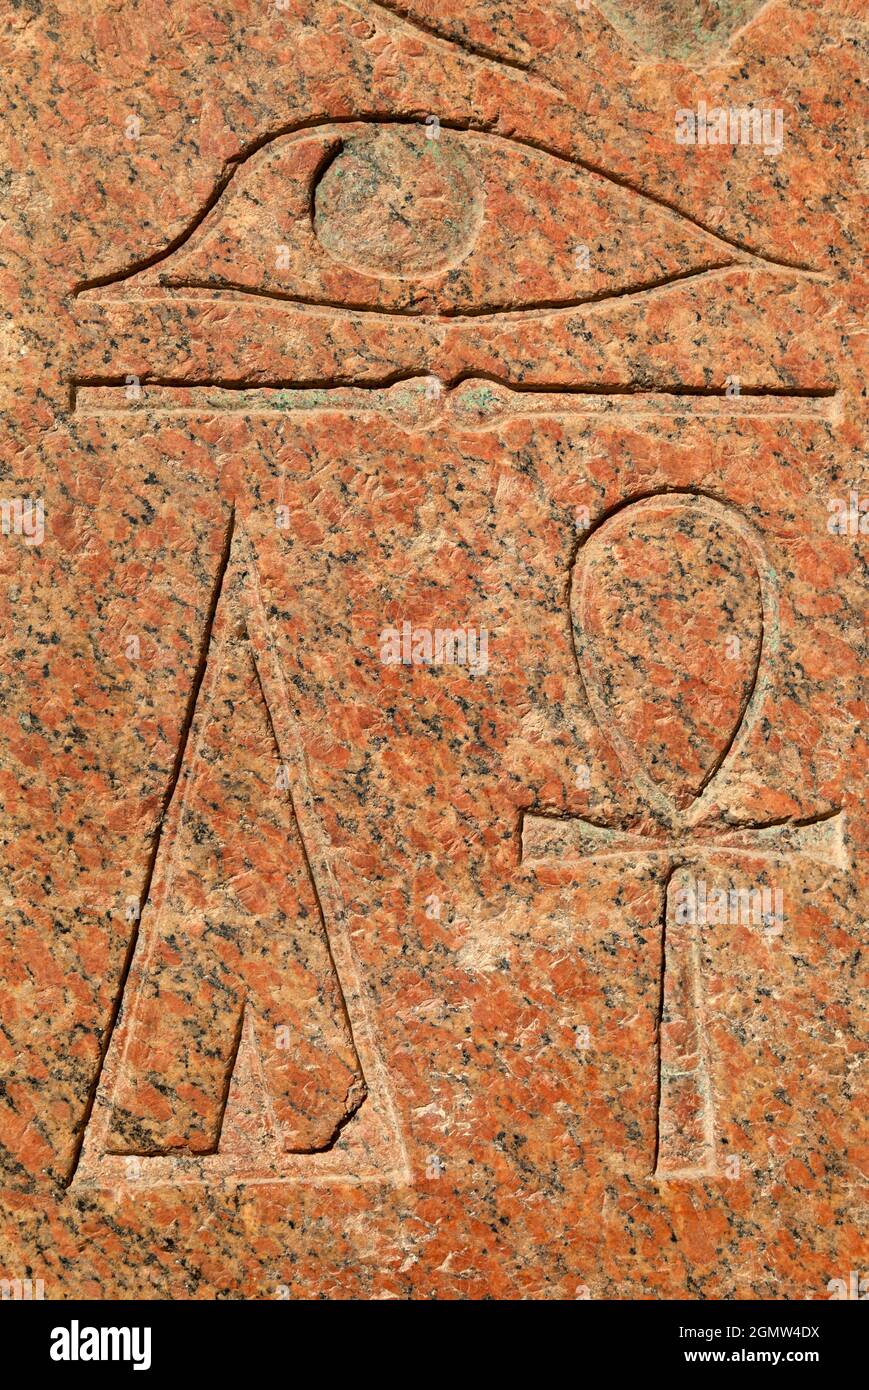 Le temple mortuaire de la reine Hatshepsut, le Djeser-Djeseru (Saint des Saints), est situé sous les falaises de Deir el Bahari sur la rive ouest du Banque D'Images